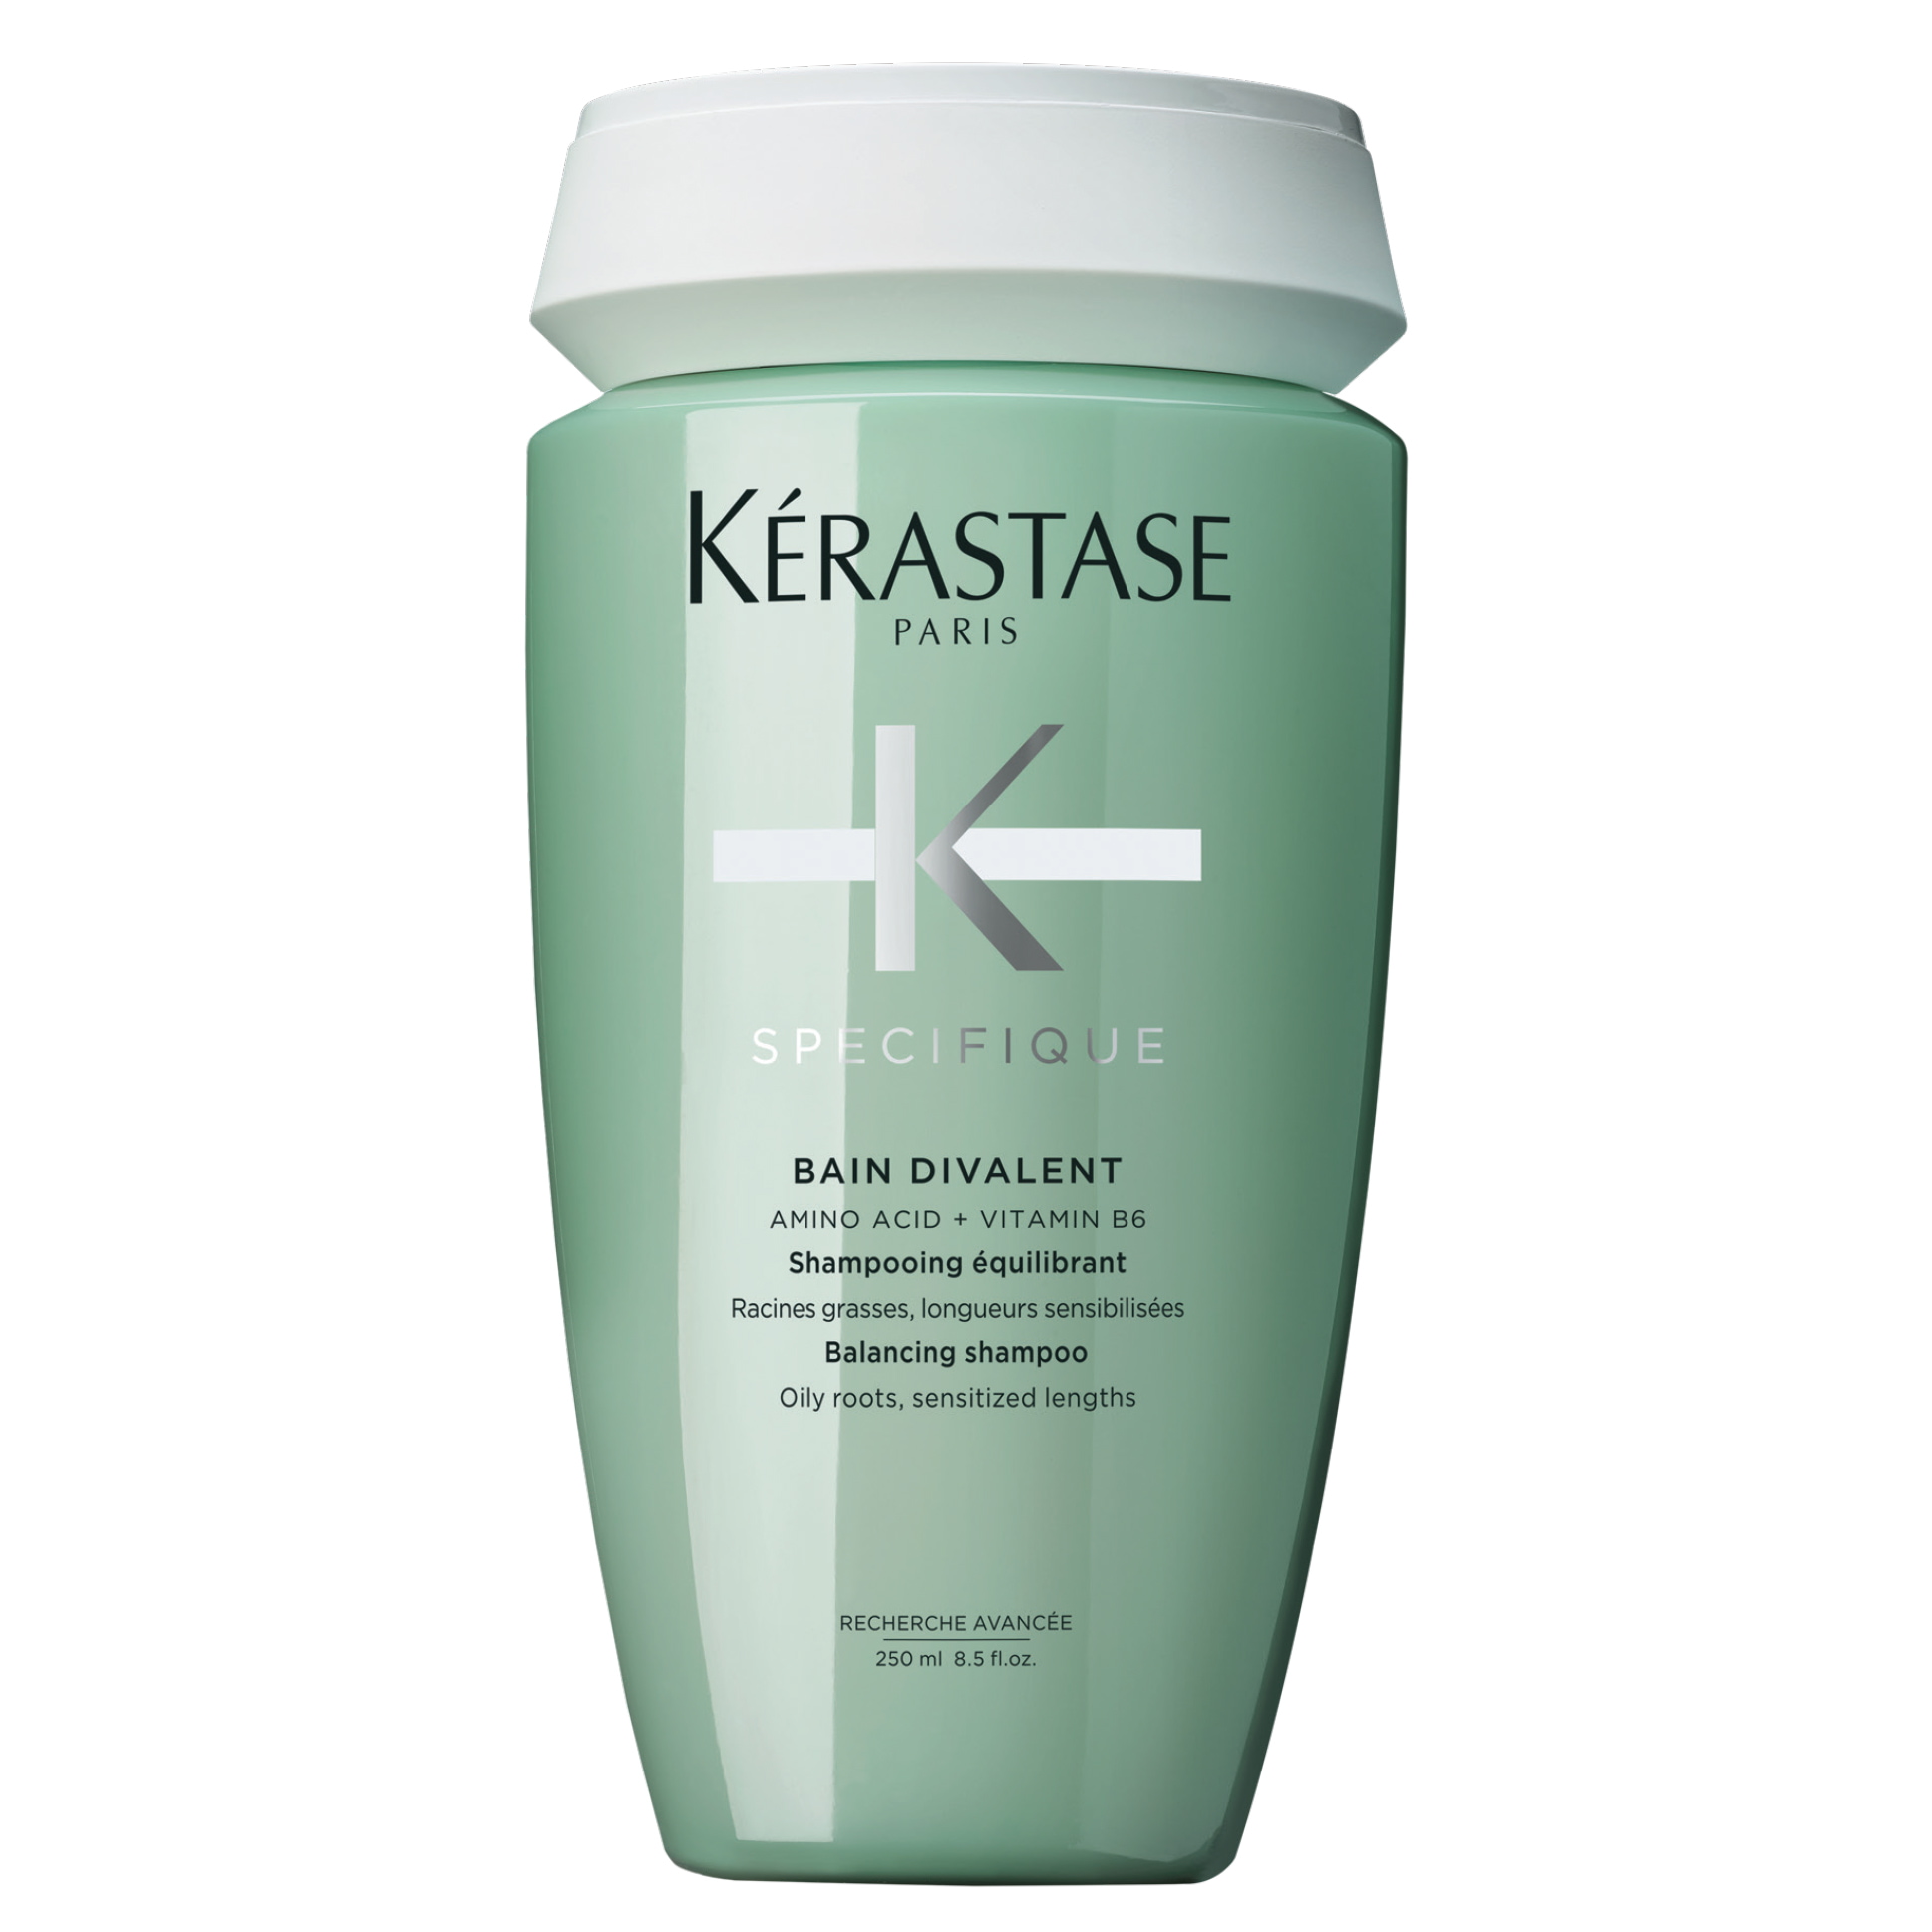 Buy Kerastase Divalent Shampoo for Oily Hair Online